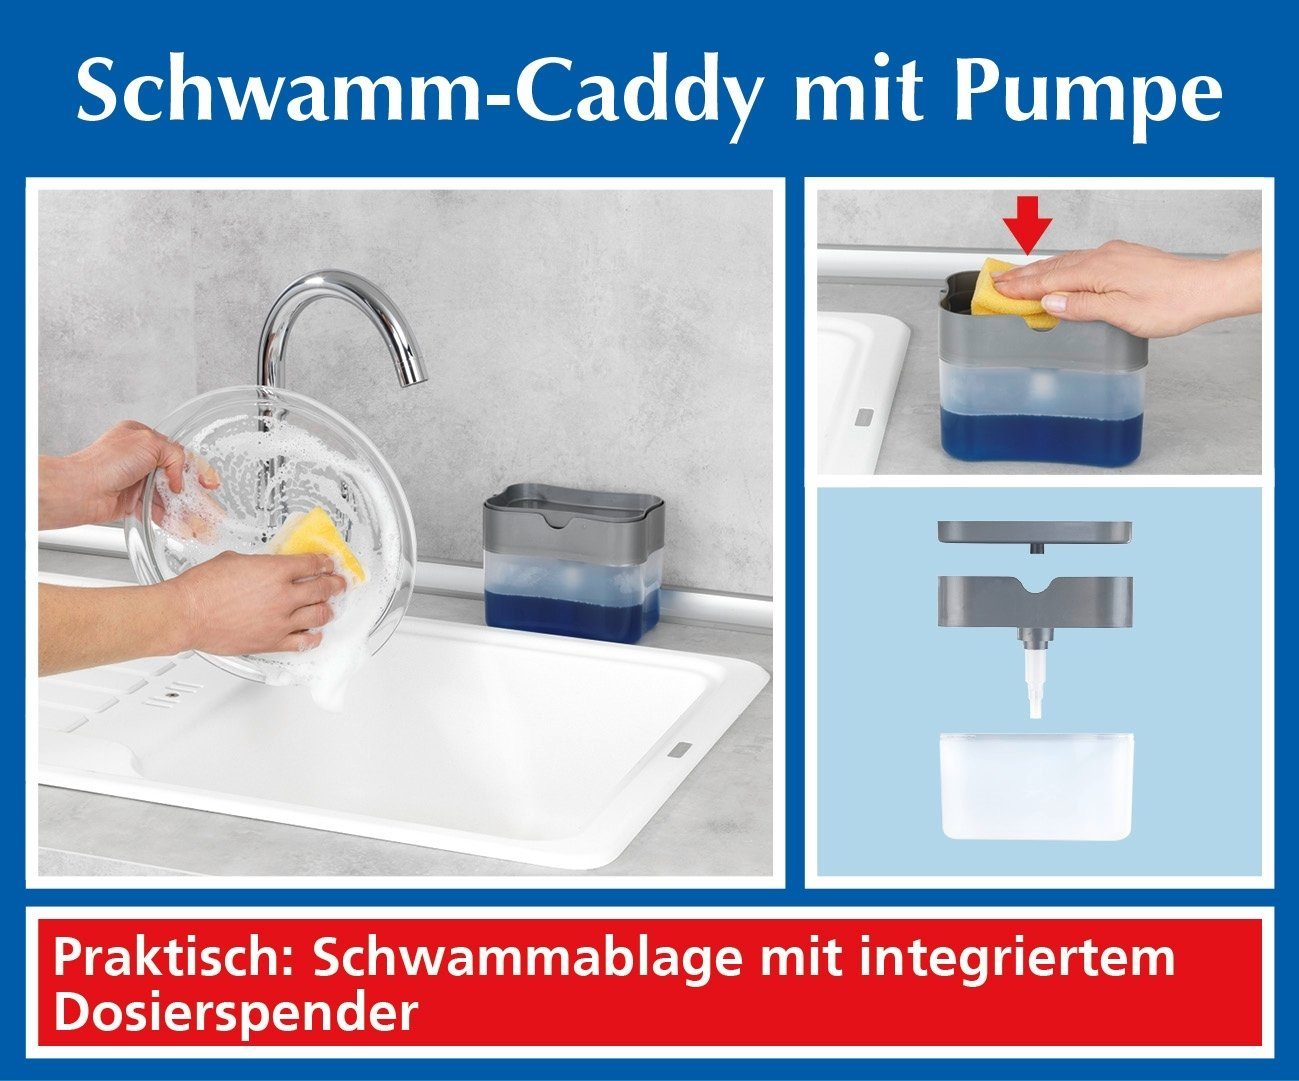 Maximex Reinigungsschwamm Schwamm-Caddy mit Pumpe Fassungsvermögen: 500 ml.